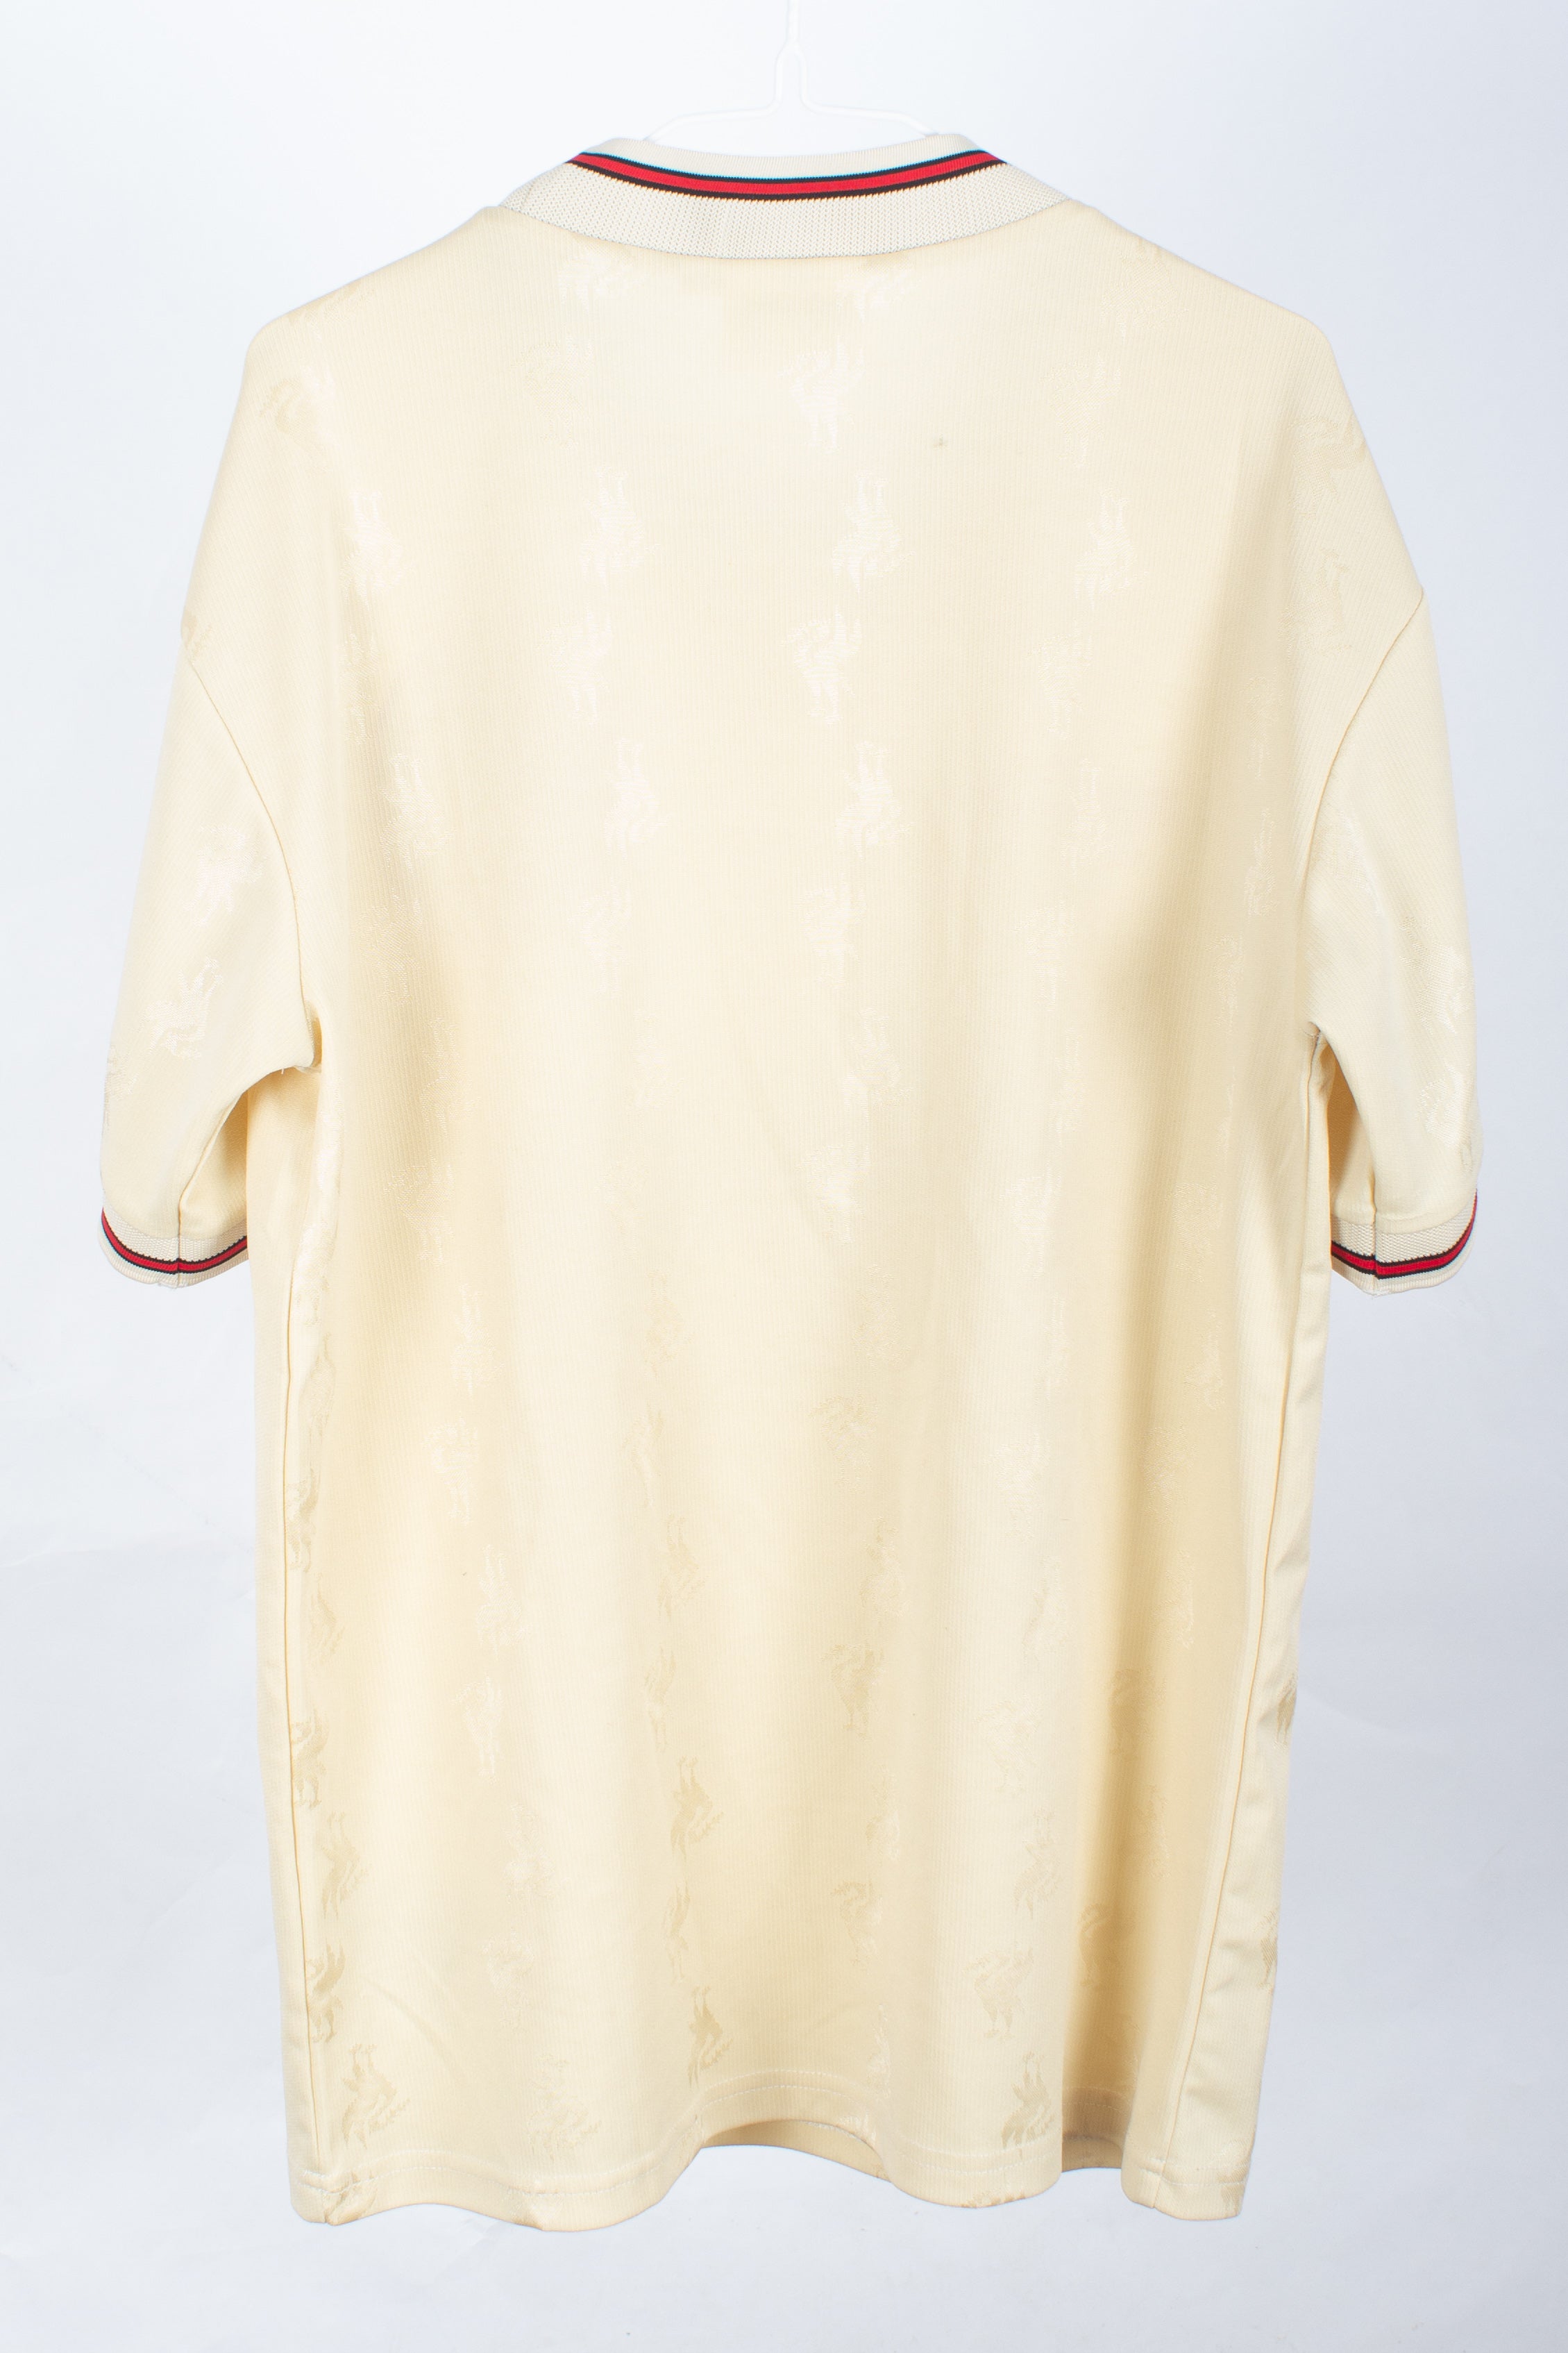 Liverpool 1996/97 Away Shirt (XL)